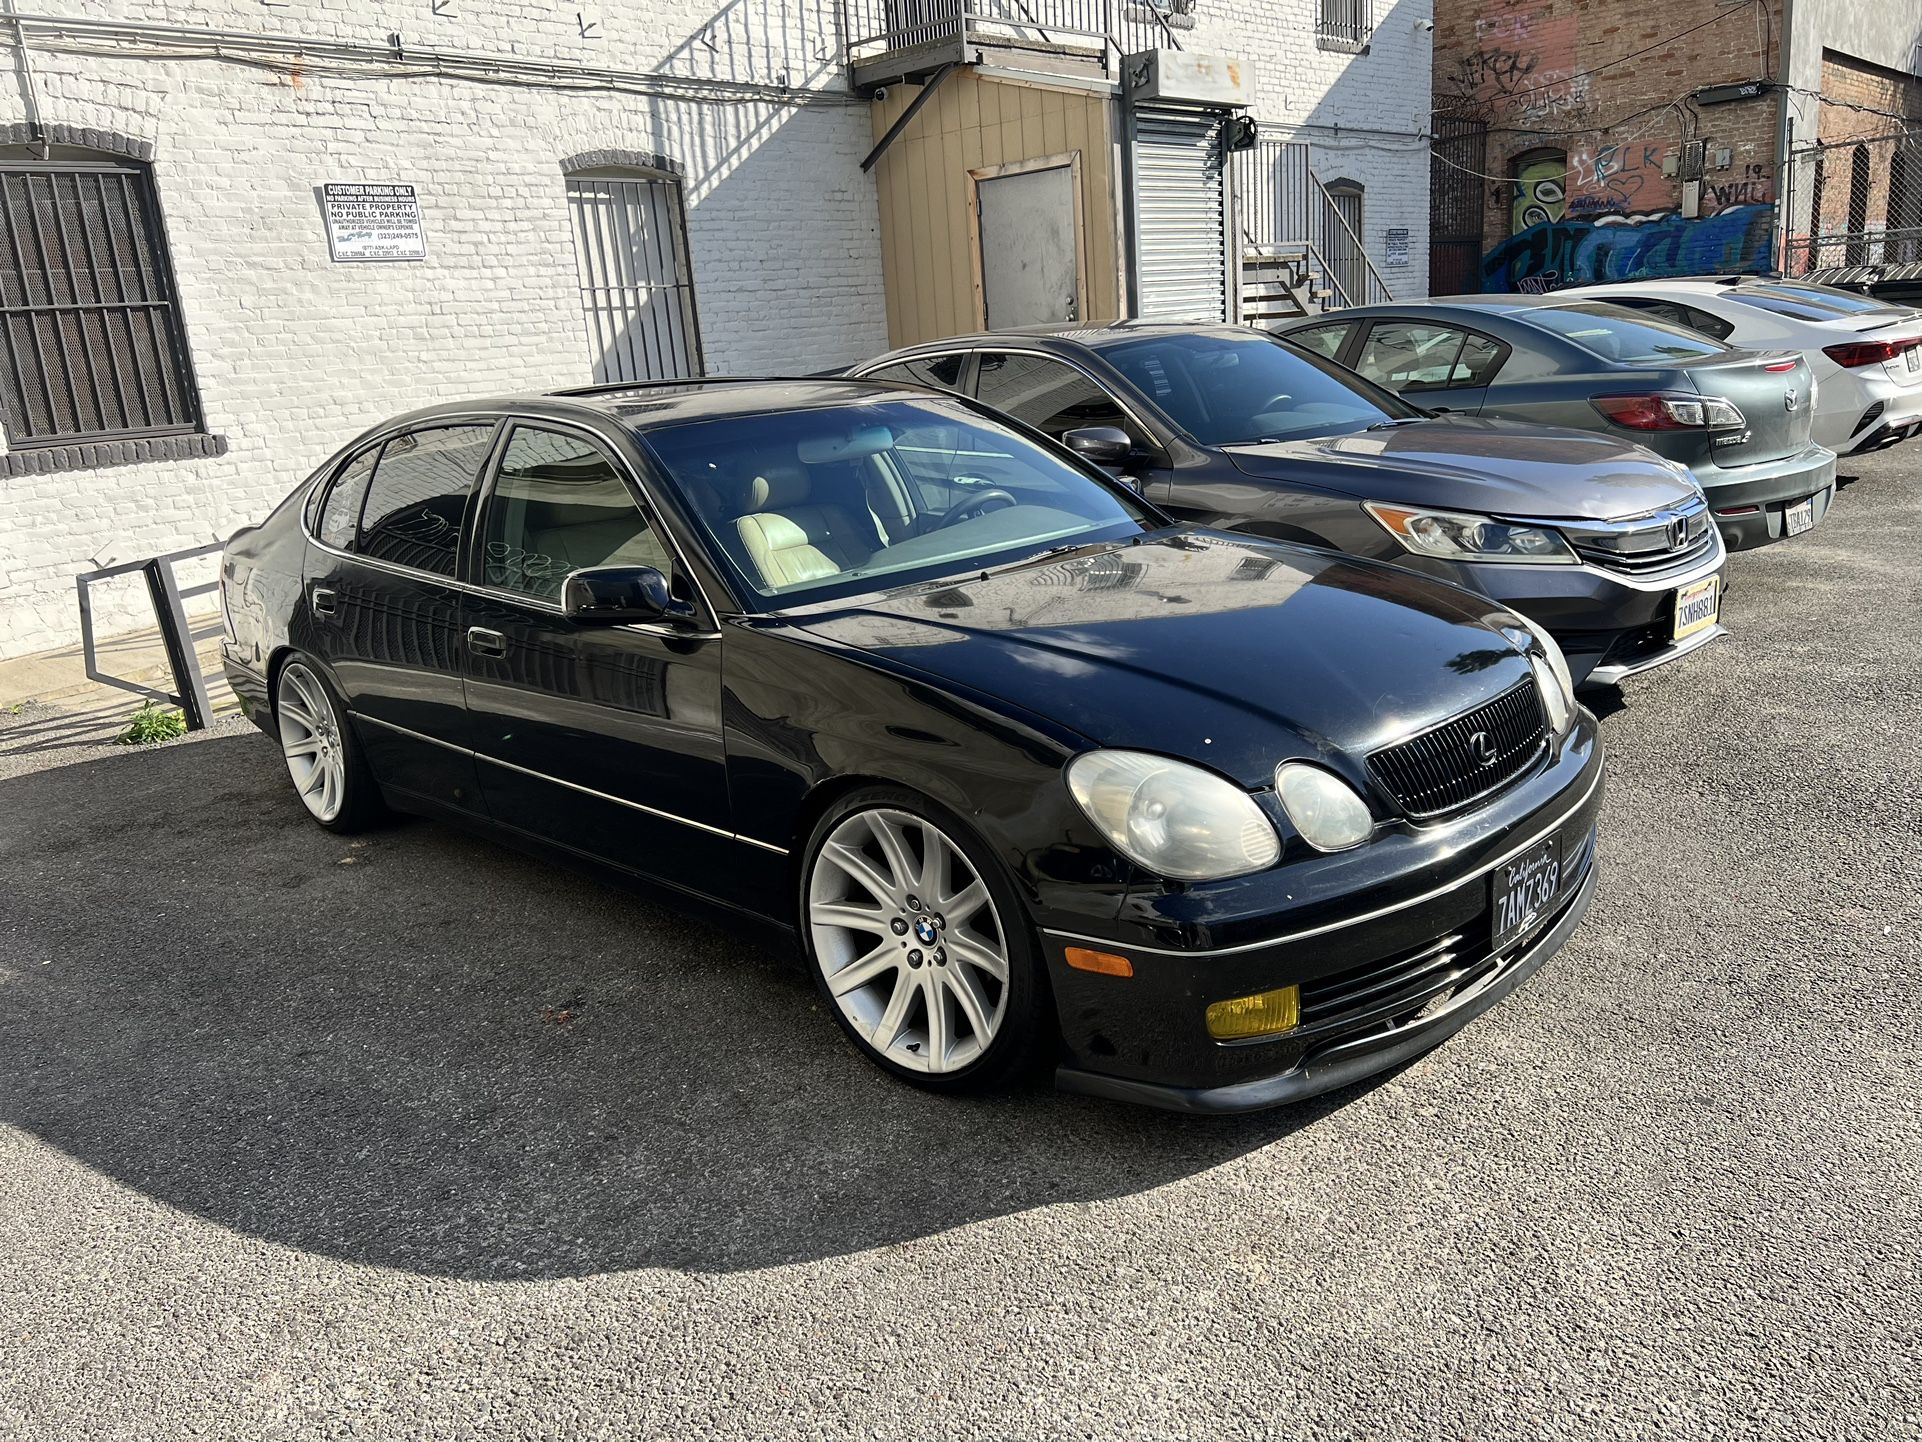 1999 Lexus GS 300